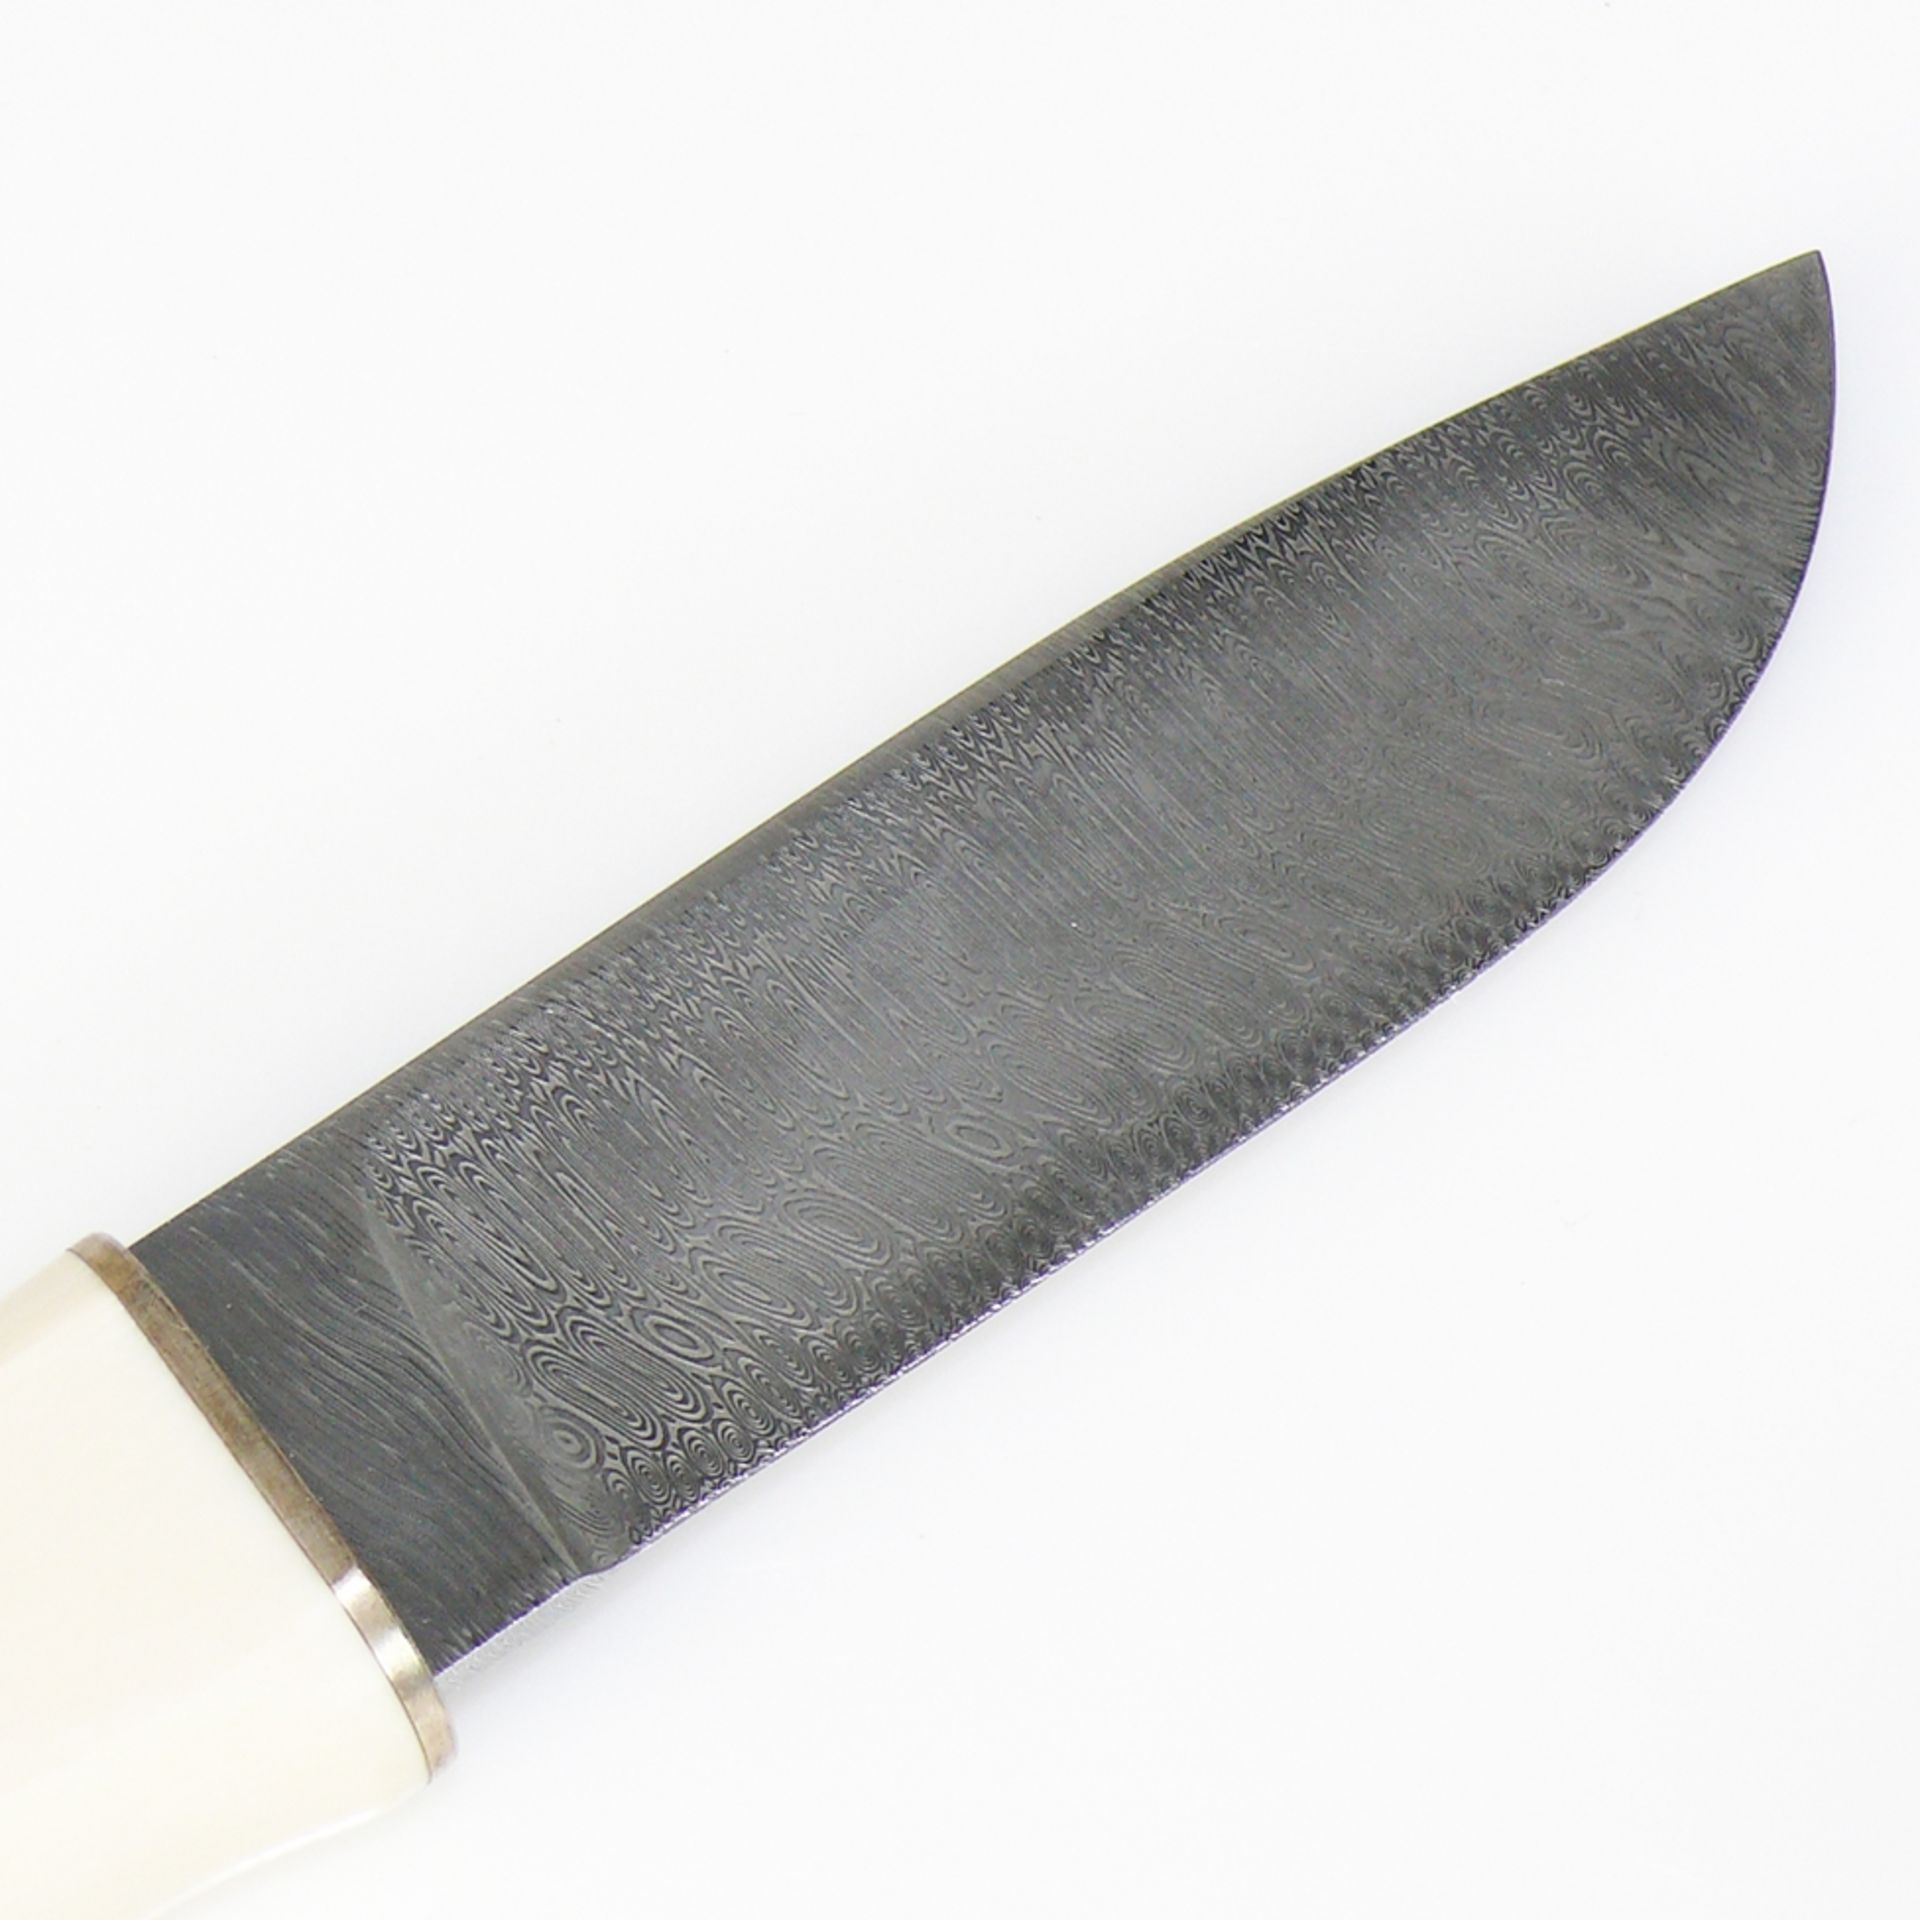 Japanisches Messer - Image 2 of 5